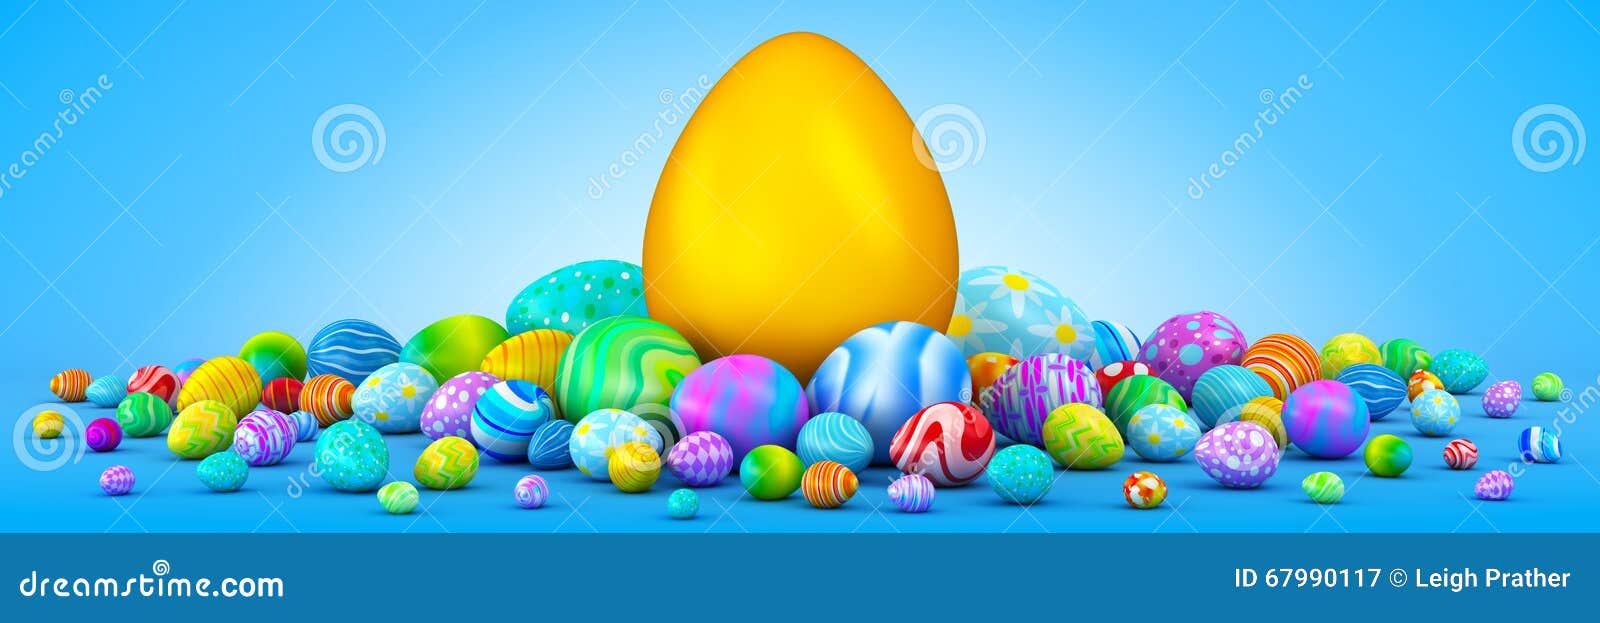 pile of easter eggs surrounding a giant golden egg